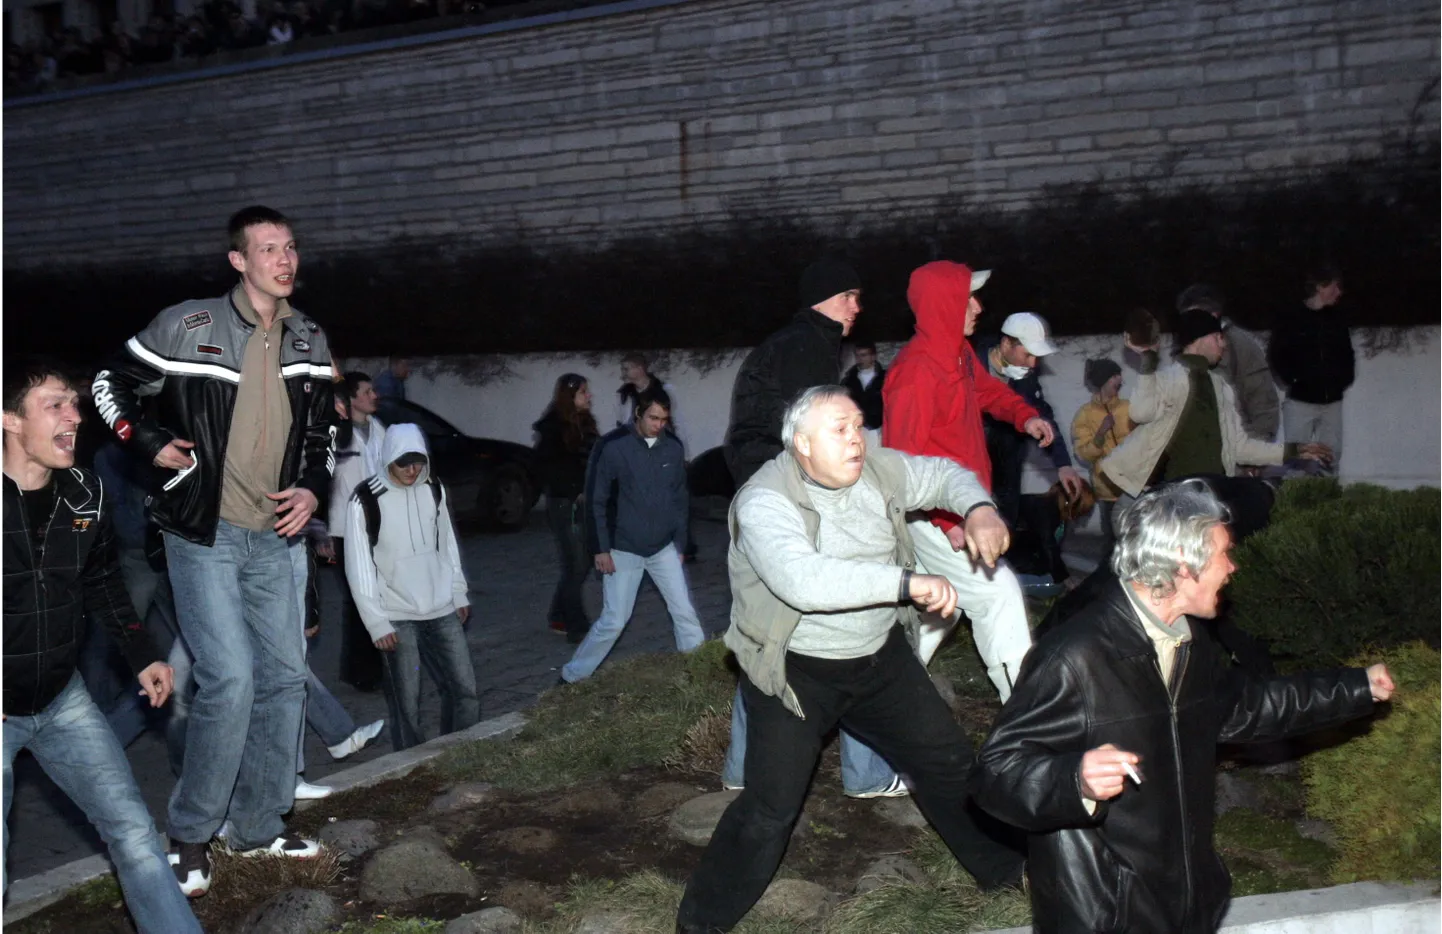 Pronksiöö rahutused 2007. aasta aprillis Tallinna kesklinnas.